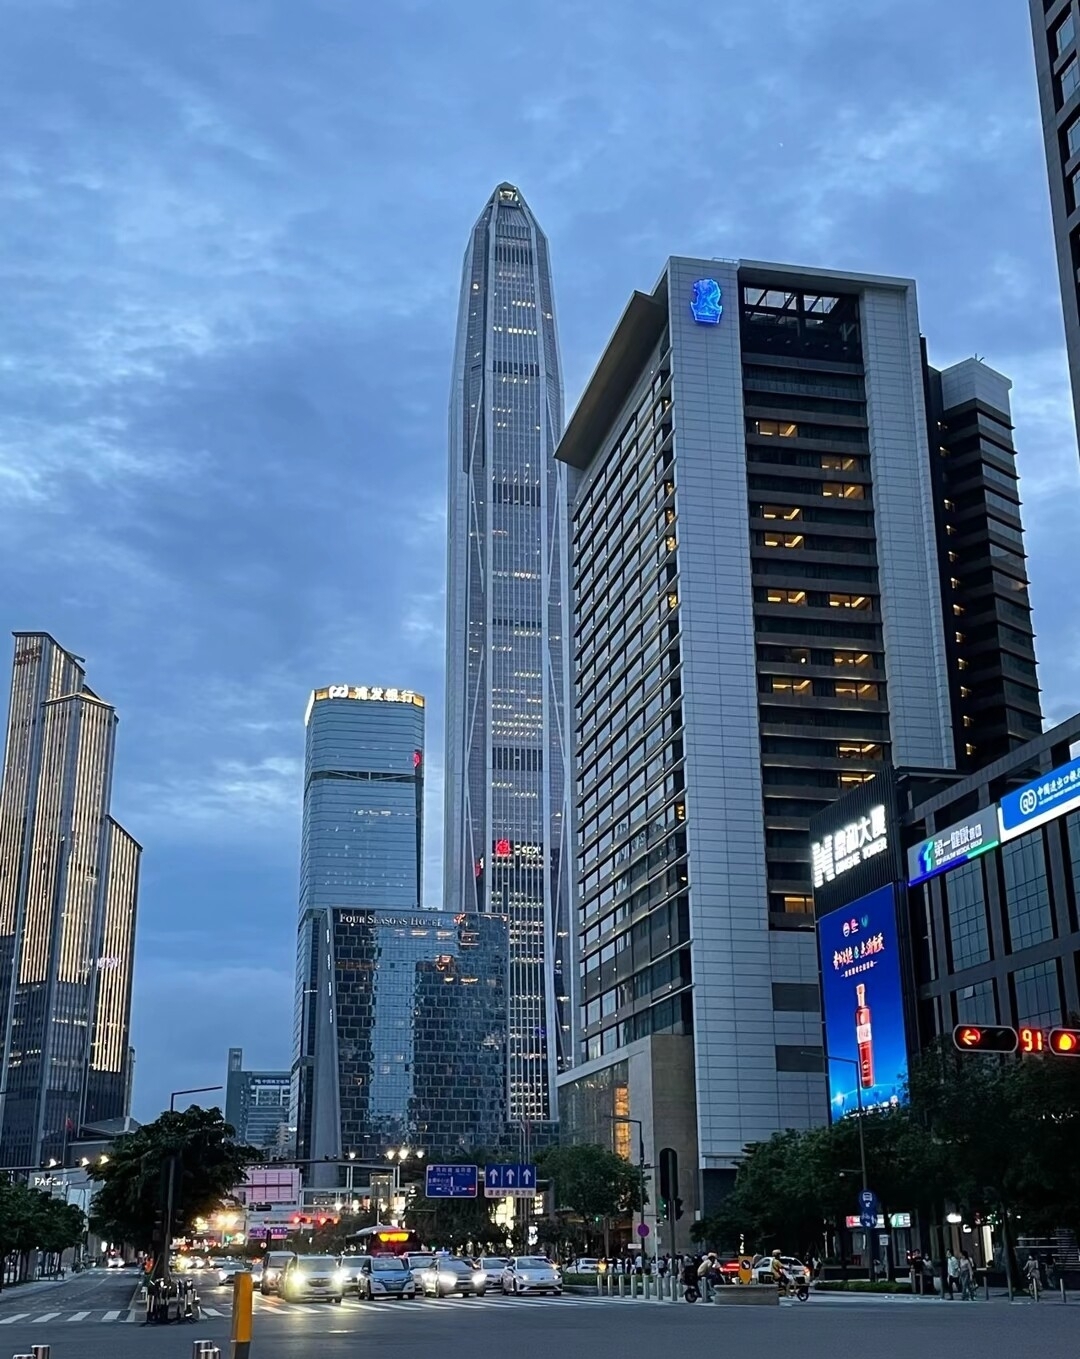 总要去趟深圳吧，看看东门繁华的老街，看看深圳湾的晚风，感受这个蓬勃发展的城市#深圳特色